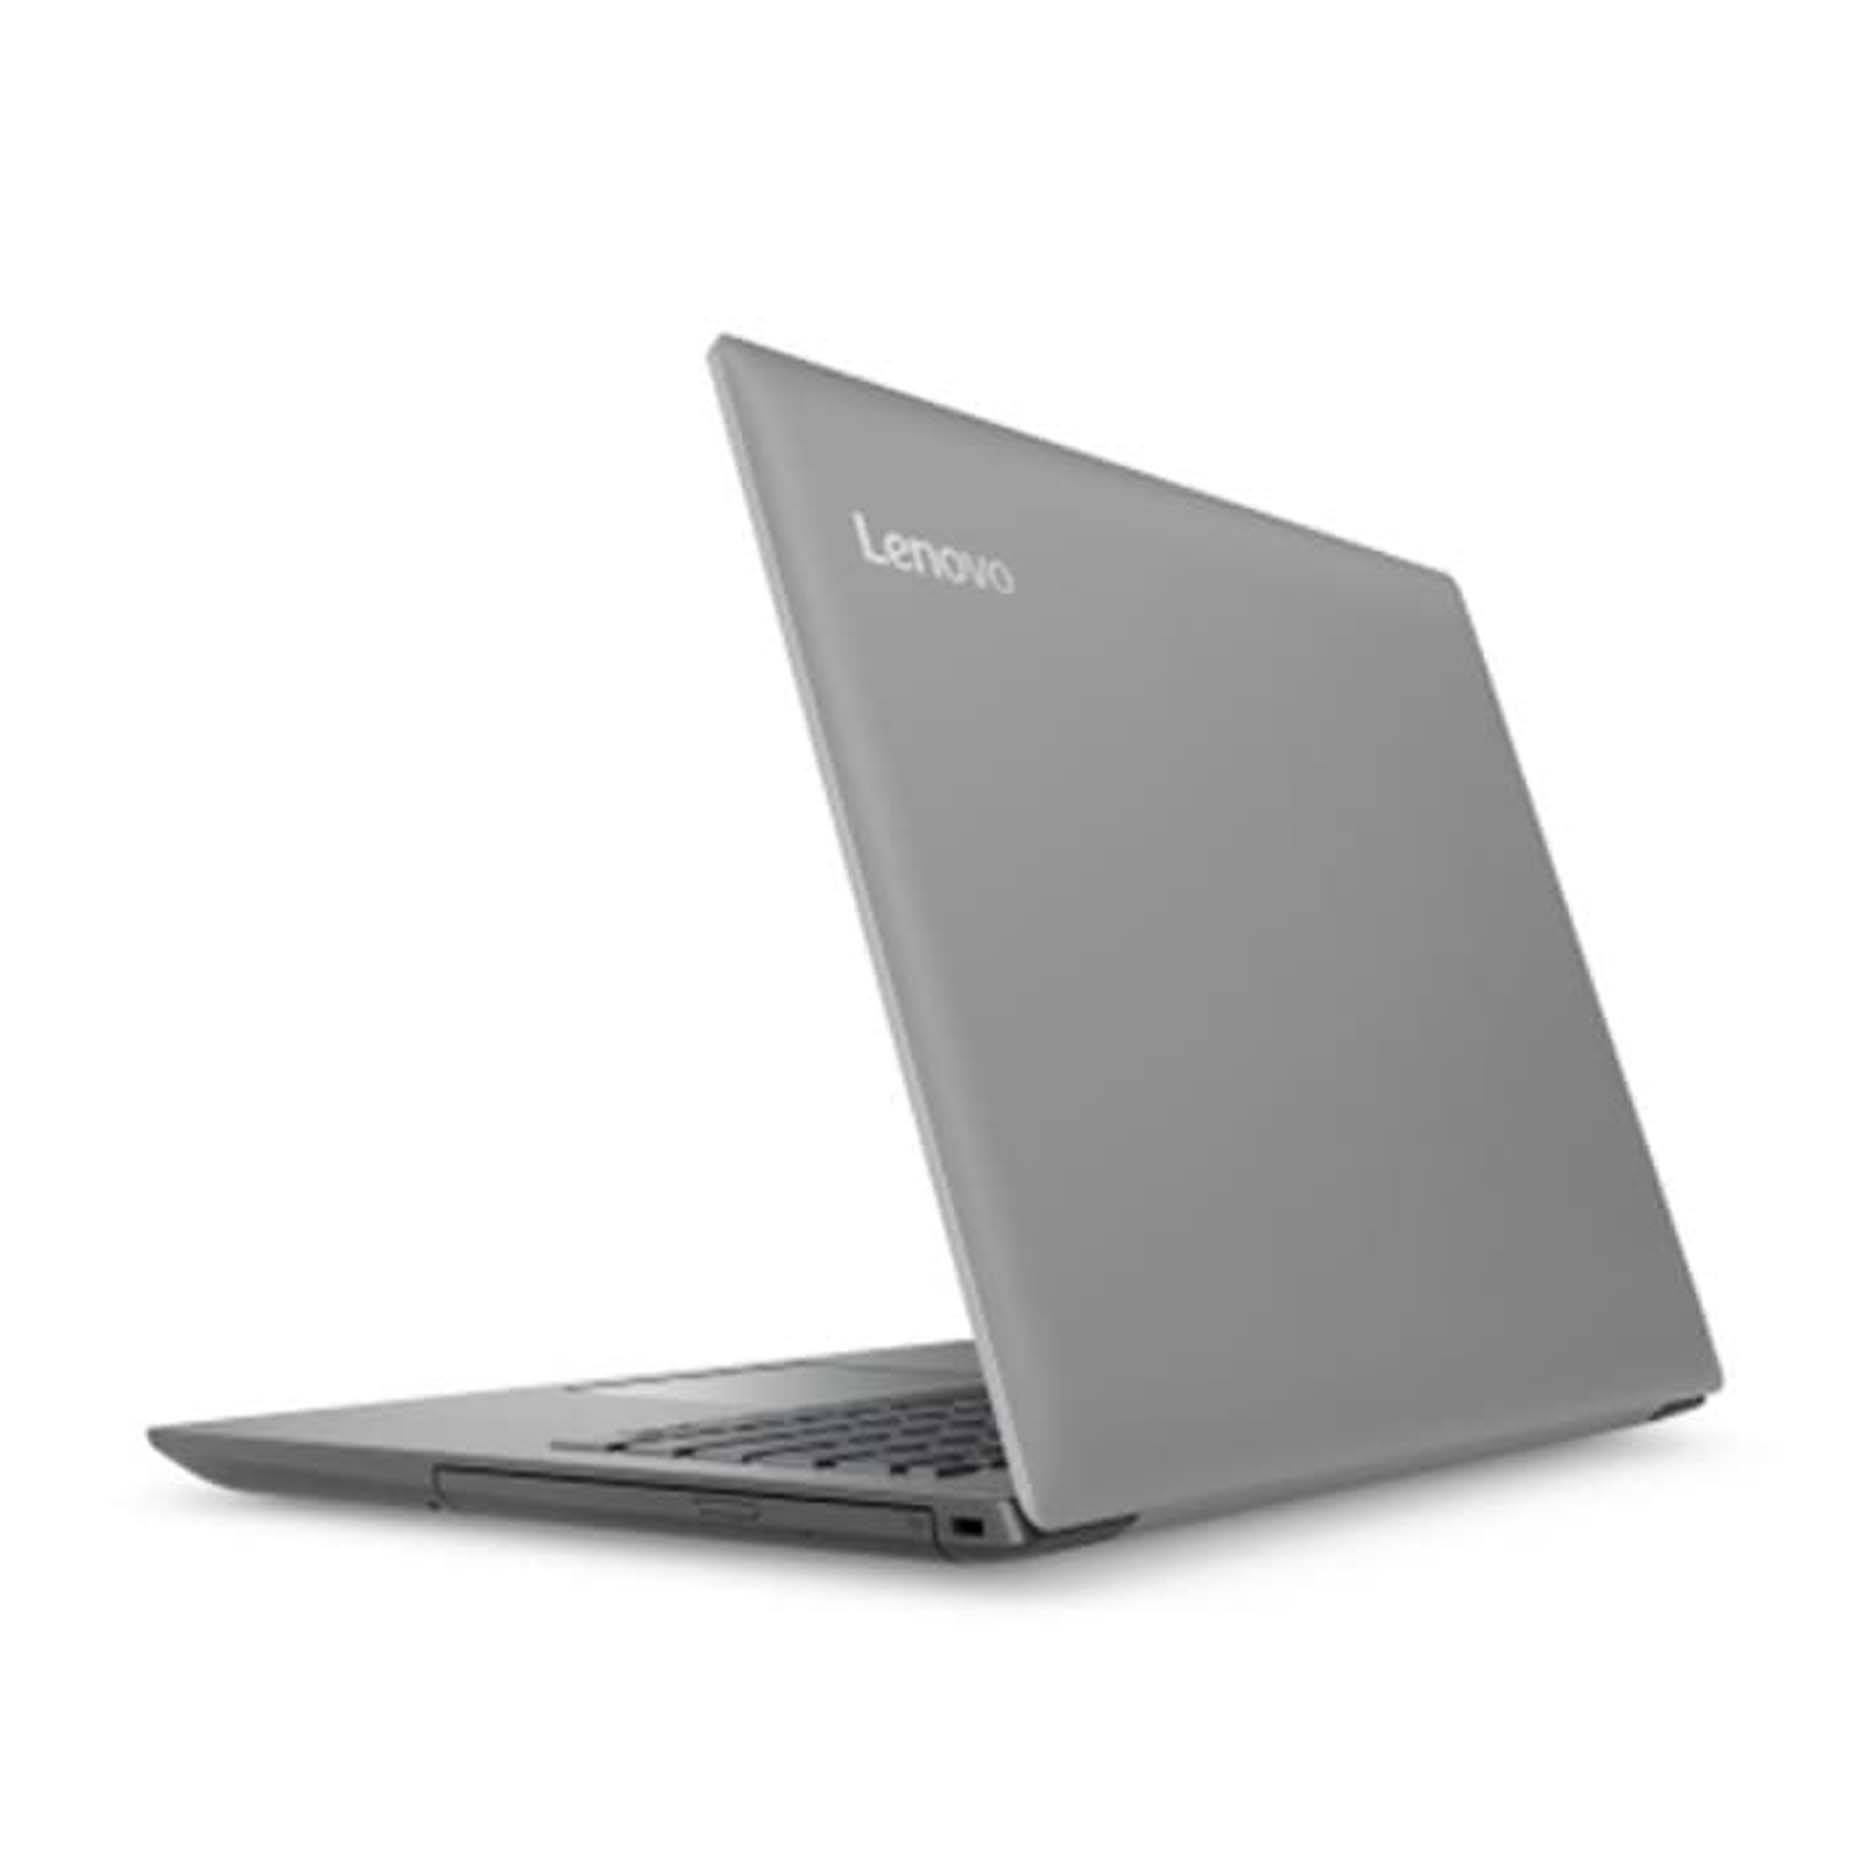 Harga Lenovo Ideapad IP320-14AST 4FID  Laptop AMD A9-9420 4GB 1TB AMD Radeon R5 2GB 14 Inch Windows 10 Grey